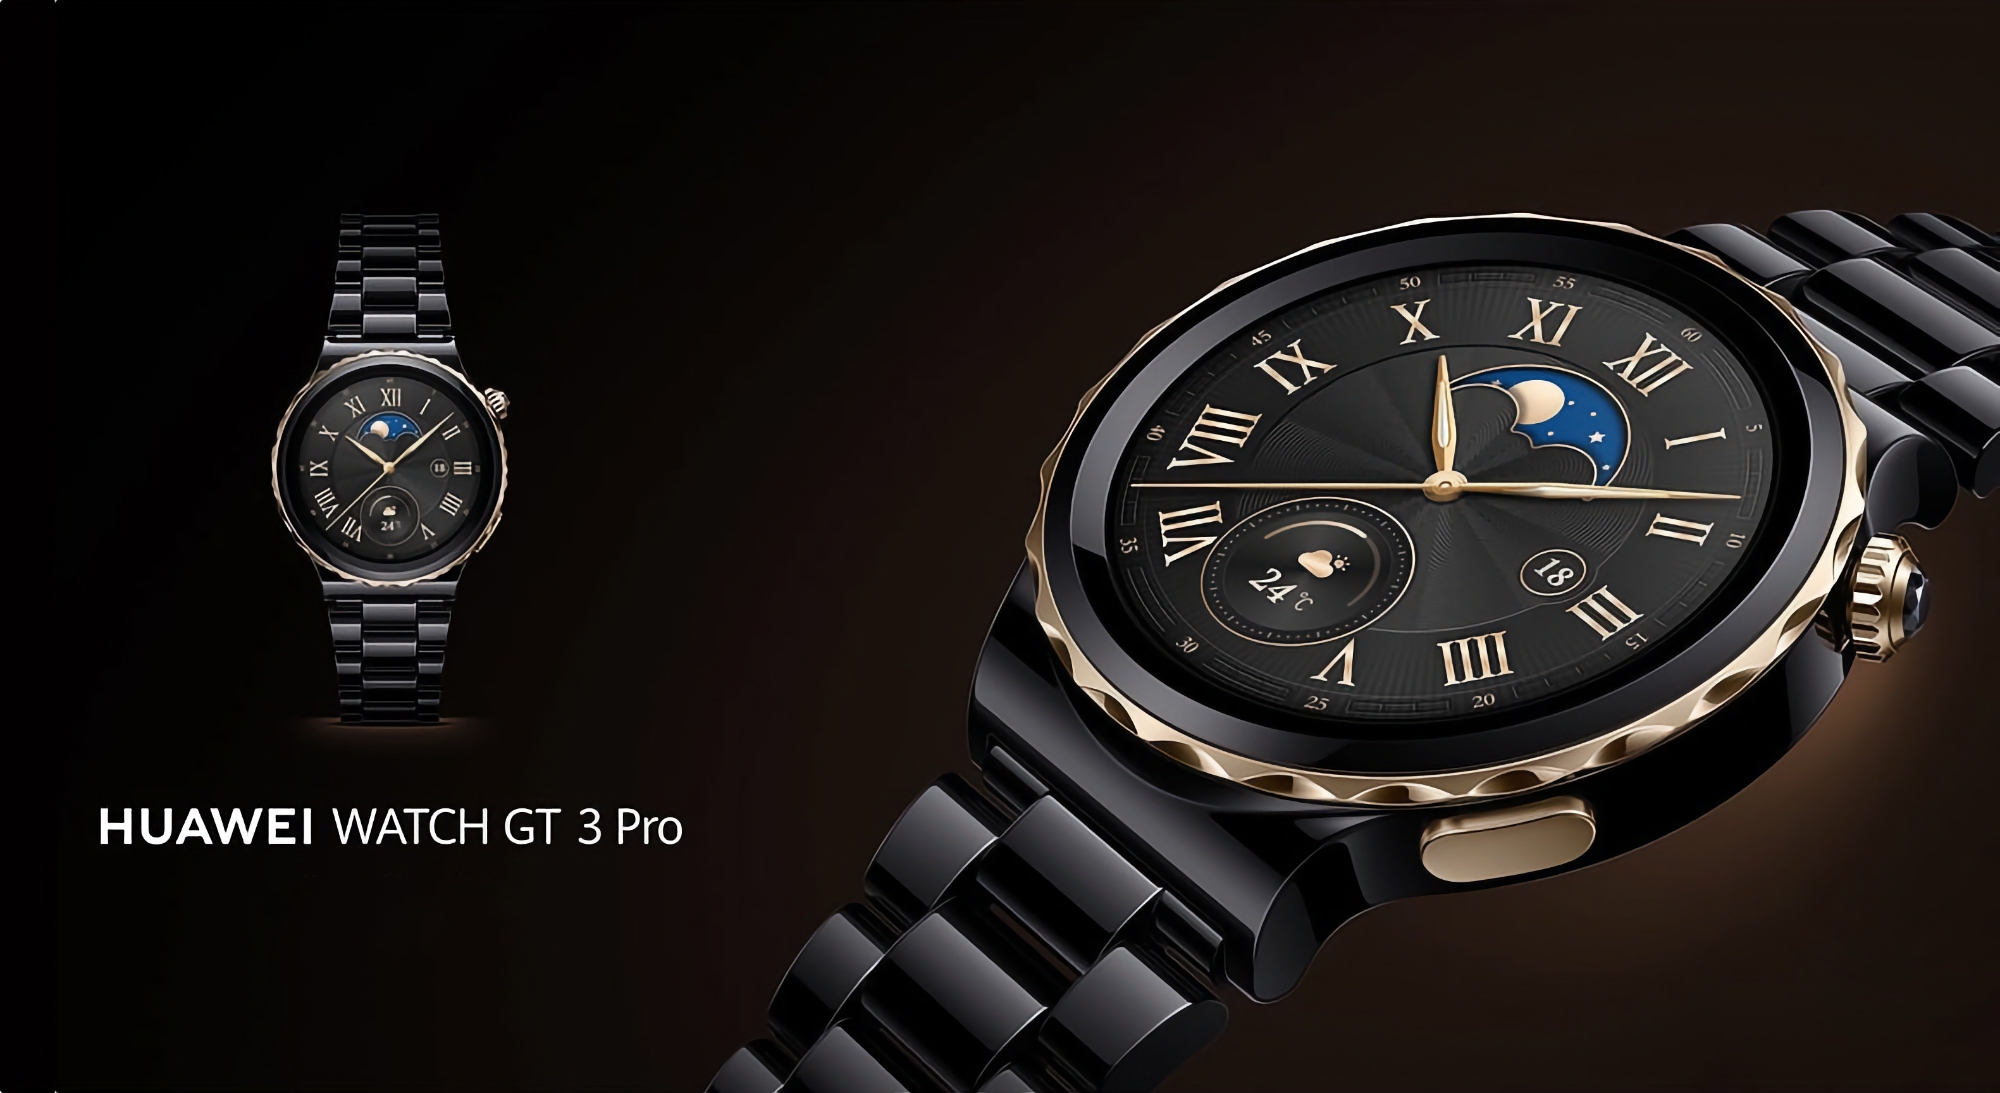 Huawei a présenté une version spéciale de la smartwatch Watch GT 3 Pro avec un boîtier en céramique noire